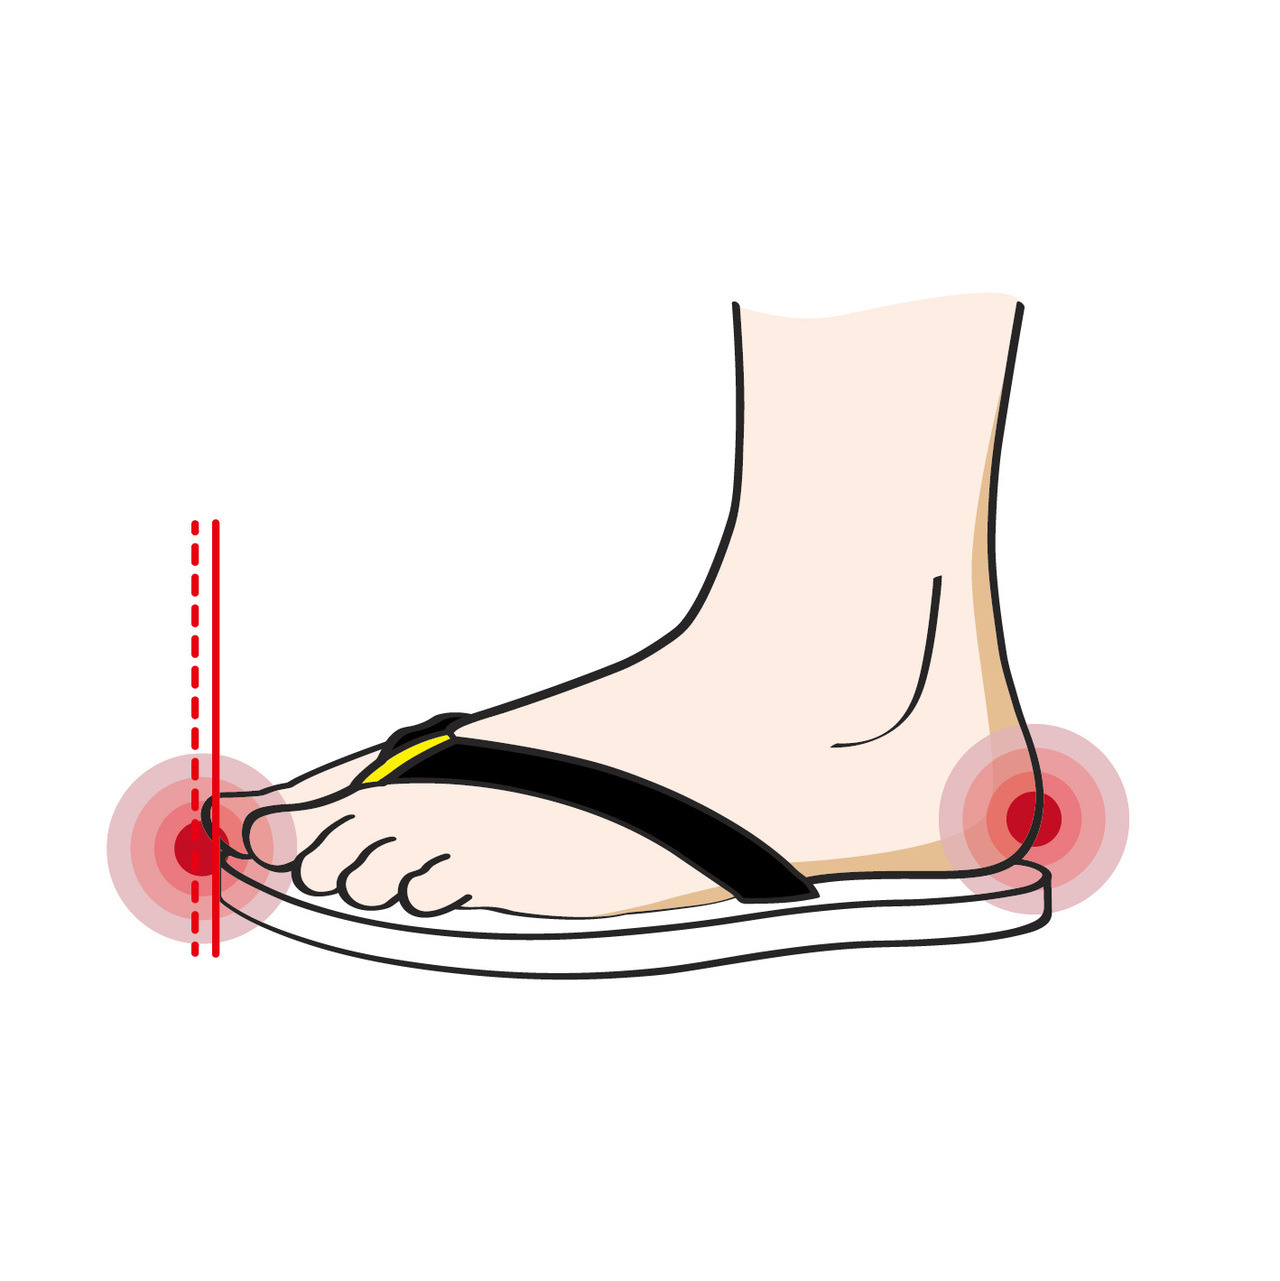 腳掌時常出現大大小小的傷口: 鞋子過短，容易直接碰撞足部